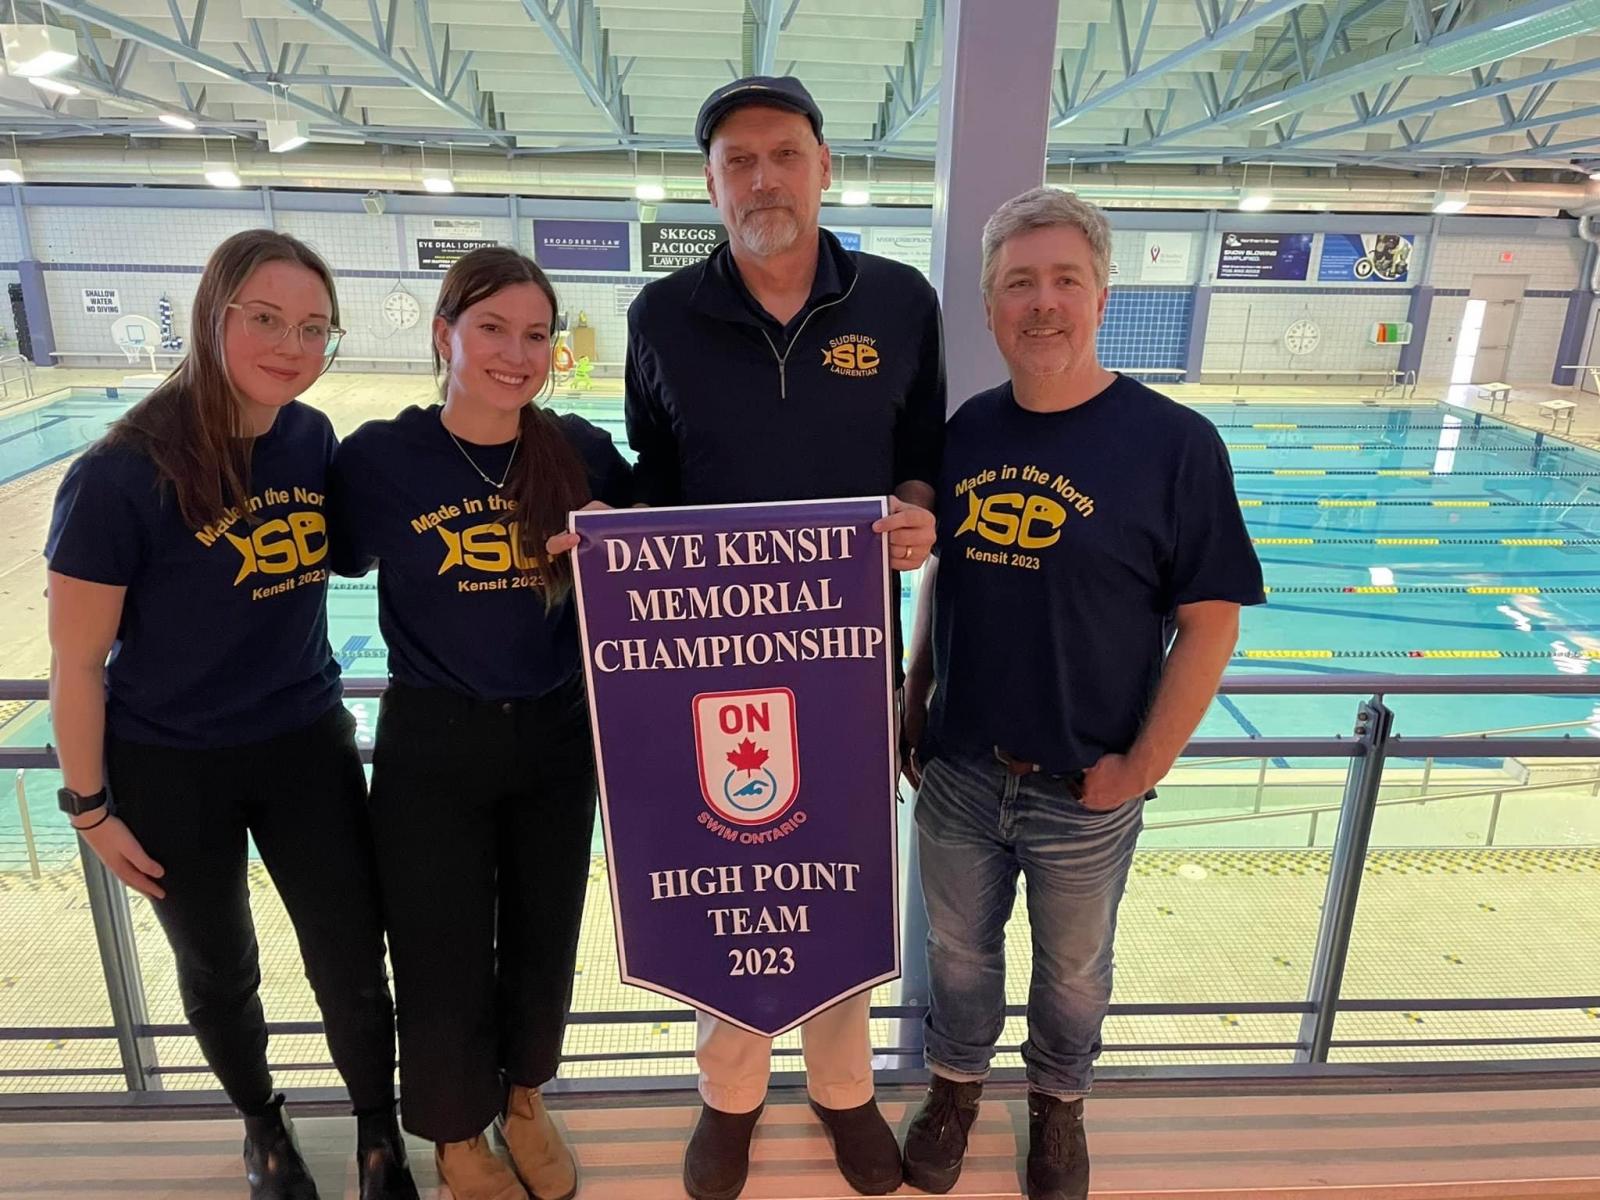 Leah-et-ses-collegues-entraineurs-du-Club-de-natation-de-la-Laurentienne-de-Sudbury-au-championnat-regional-Dave-Kensit-Memorial-de-Swim-Ontario-en-fevrier-2023.